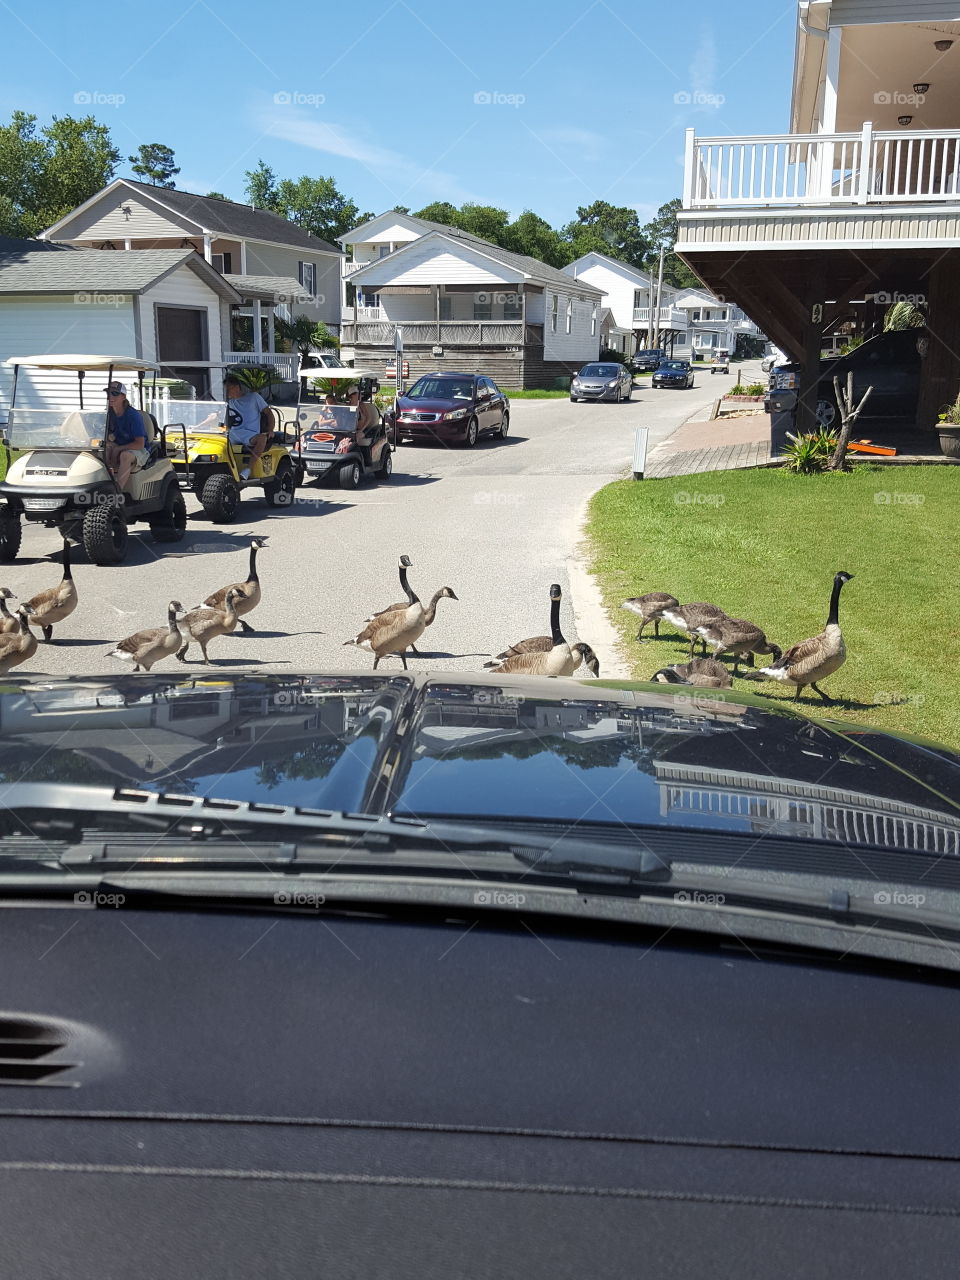 geese crossing